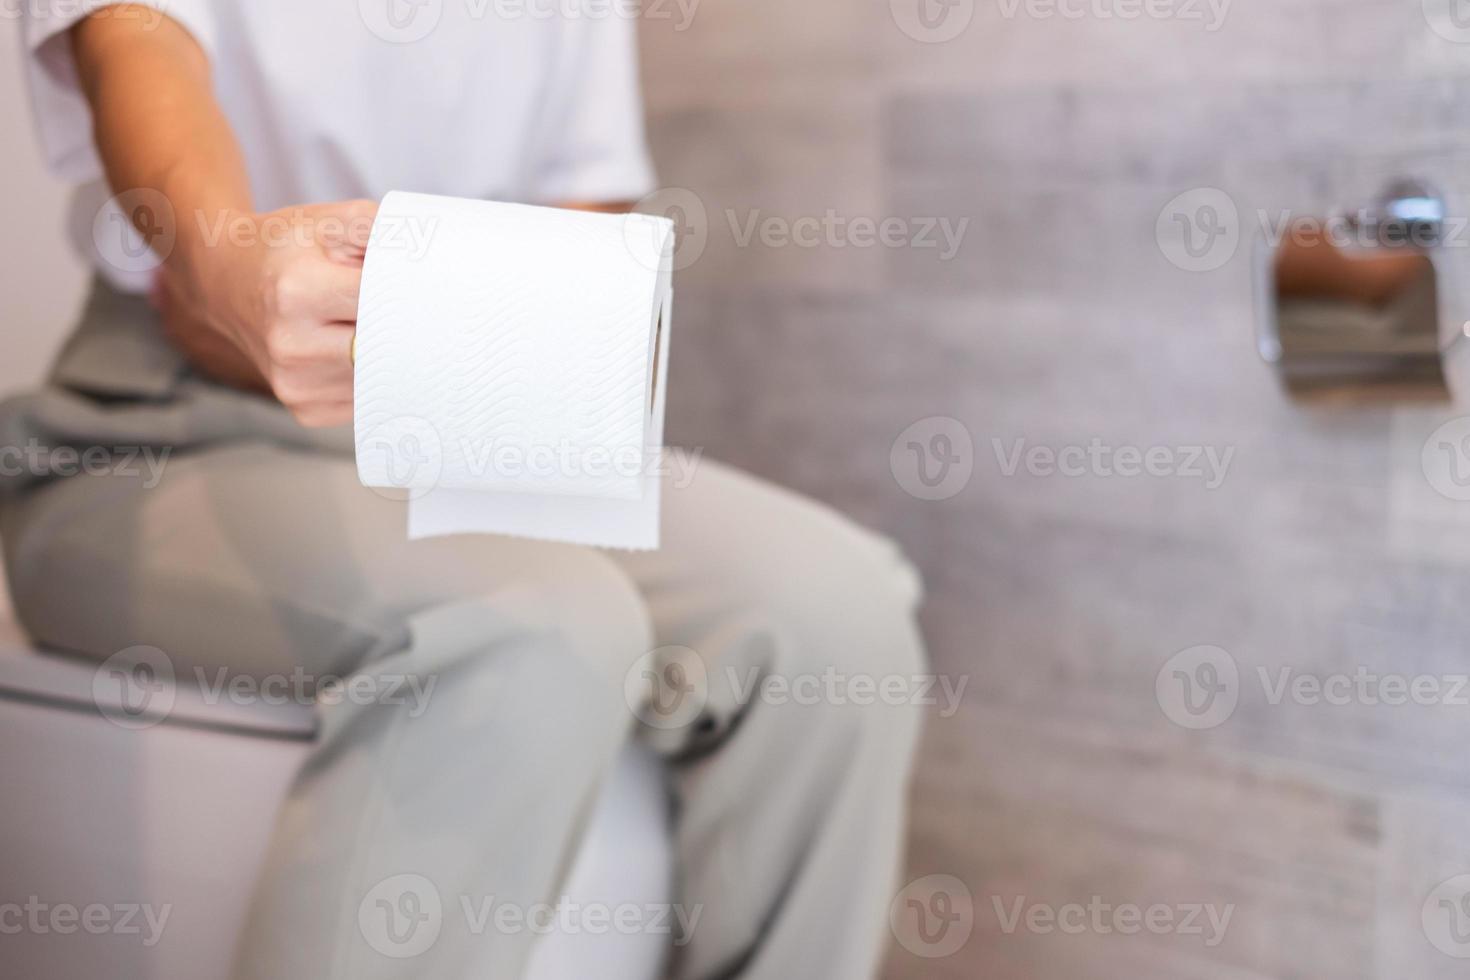 femme tenant un rouleau de papier toilette pendant s'asseoir sur la cuvette des toilettes. diarrhée, période de constipation, infection, abdominale, maux d'estomac, cystite, assurance et concept médical photo